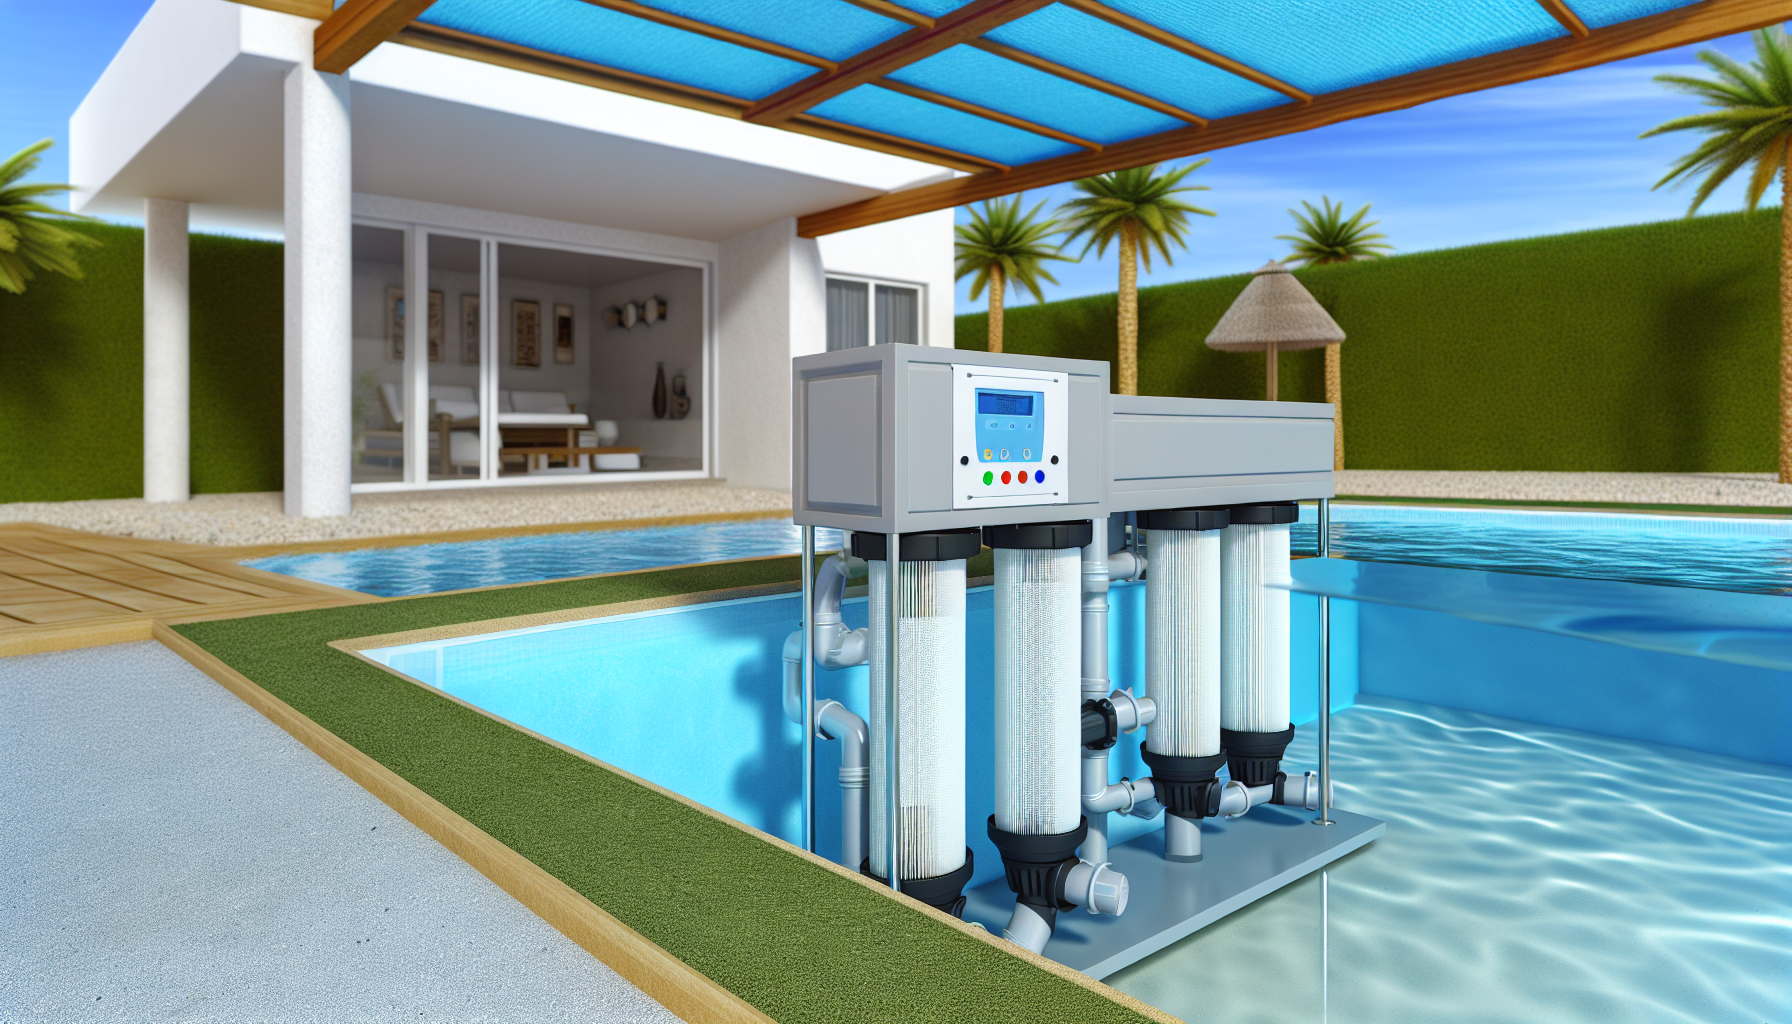 Ein Poolfiltersystem vor einem modernen Haus mit Swimmingpool und grünem Garten.